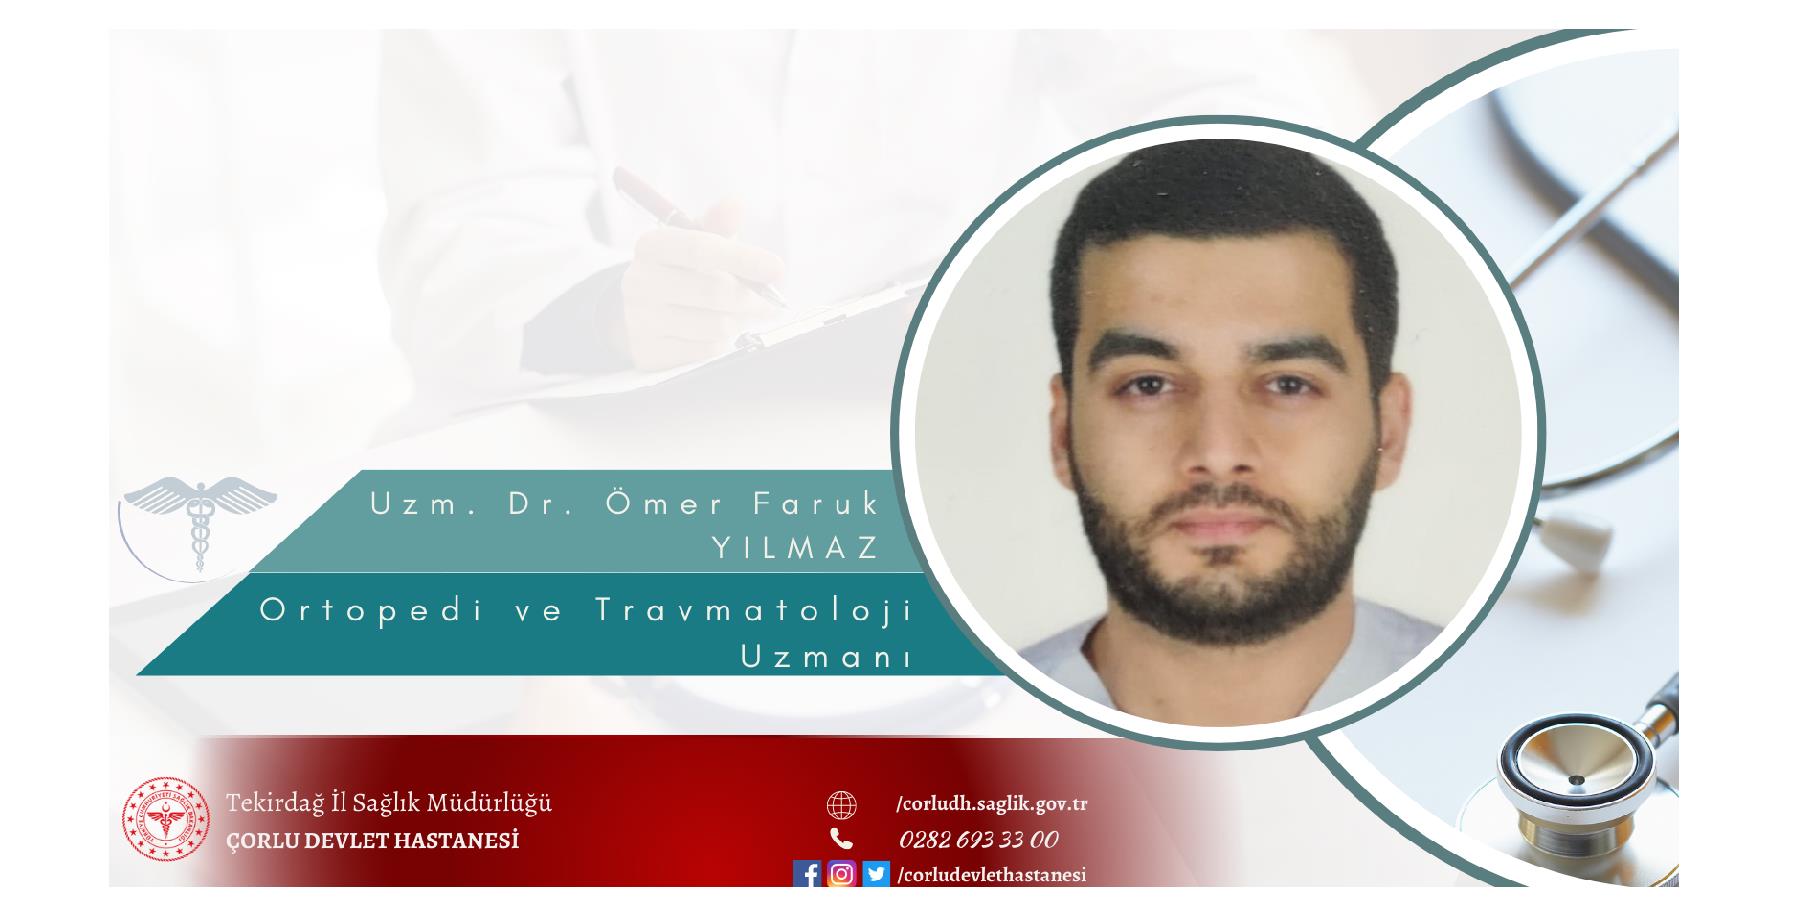 Ortopedi ve Travmatoloji Uzmanı Dr. Ömer Faruk YILMAZ hasta kabulüne başlamıştır. 